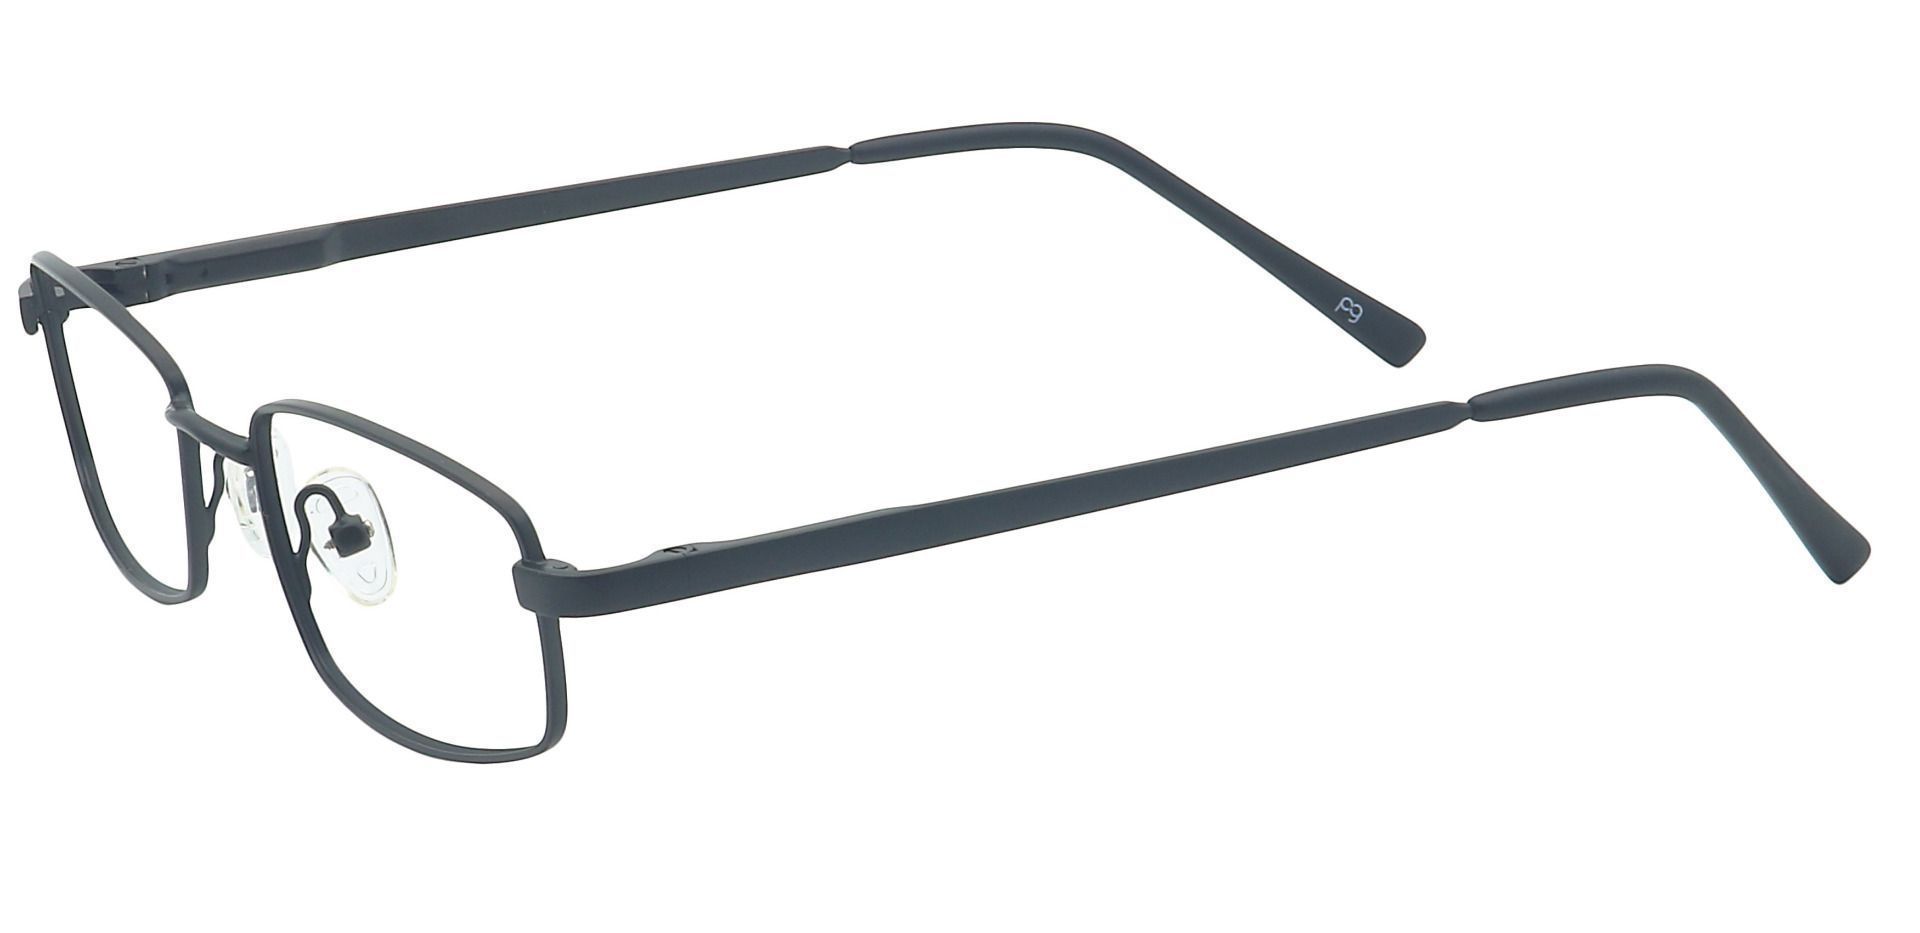 Sheldon Square Progressive Glasses - Black